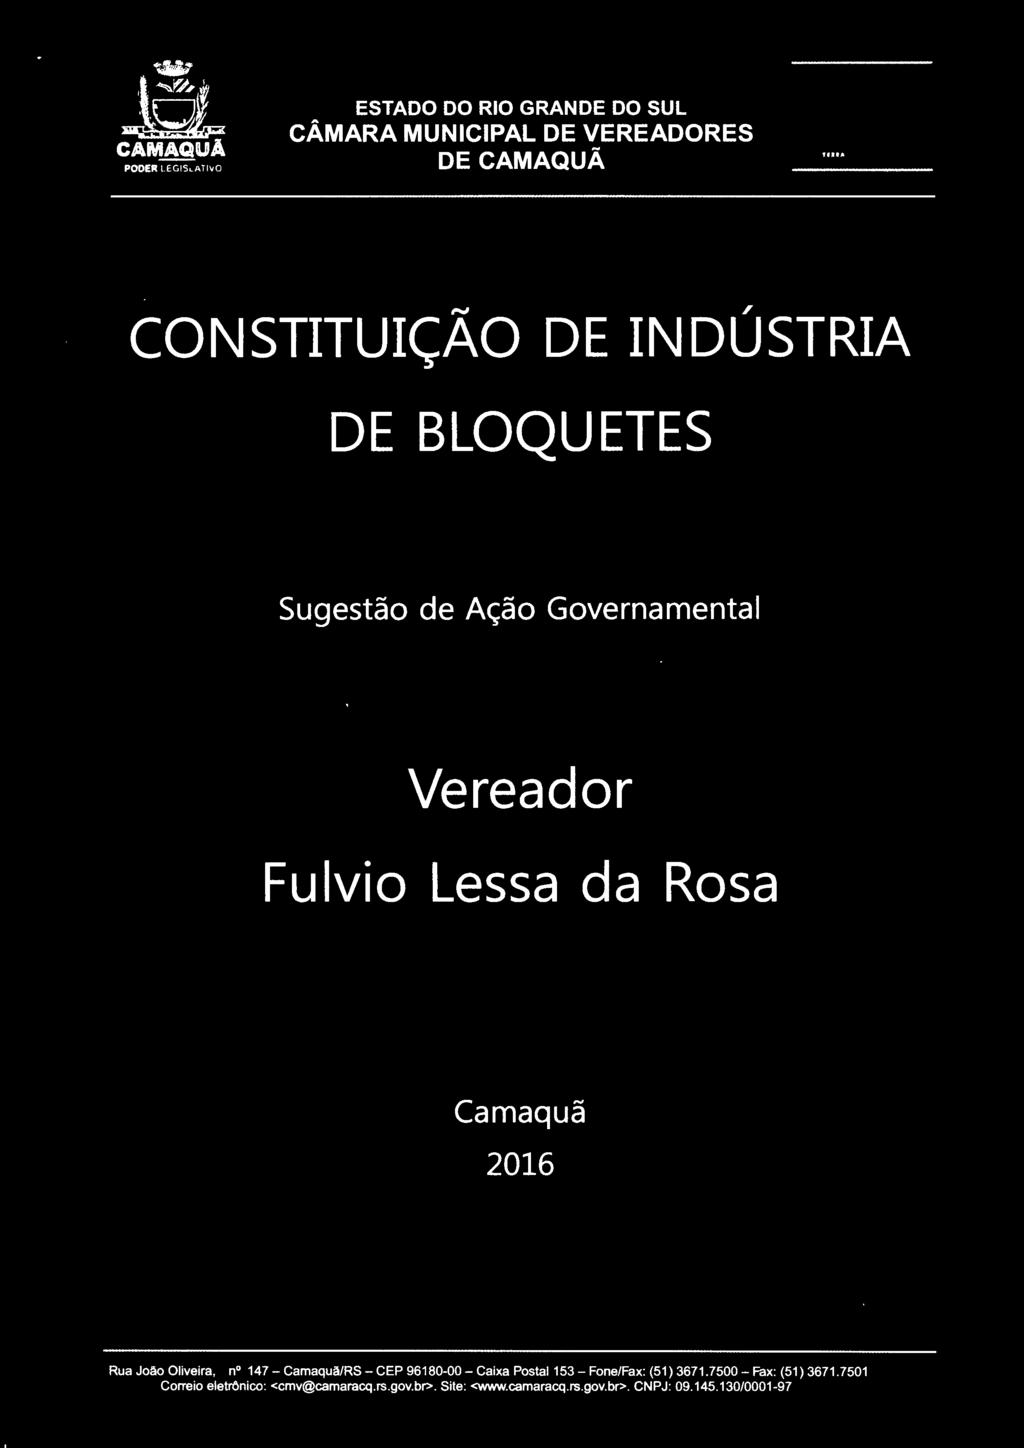 Fulvio Lessa da Rosa Camaquã 2016 Rua João Oliveira, n 147- Camaquã/RS- CEP 96180-00-